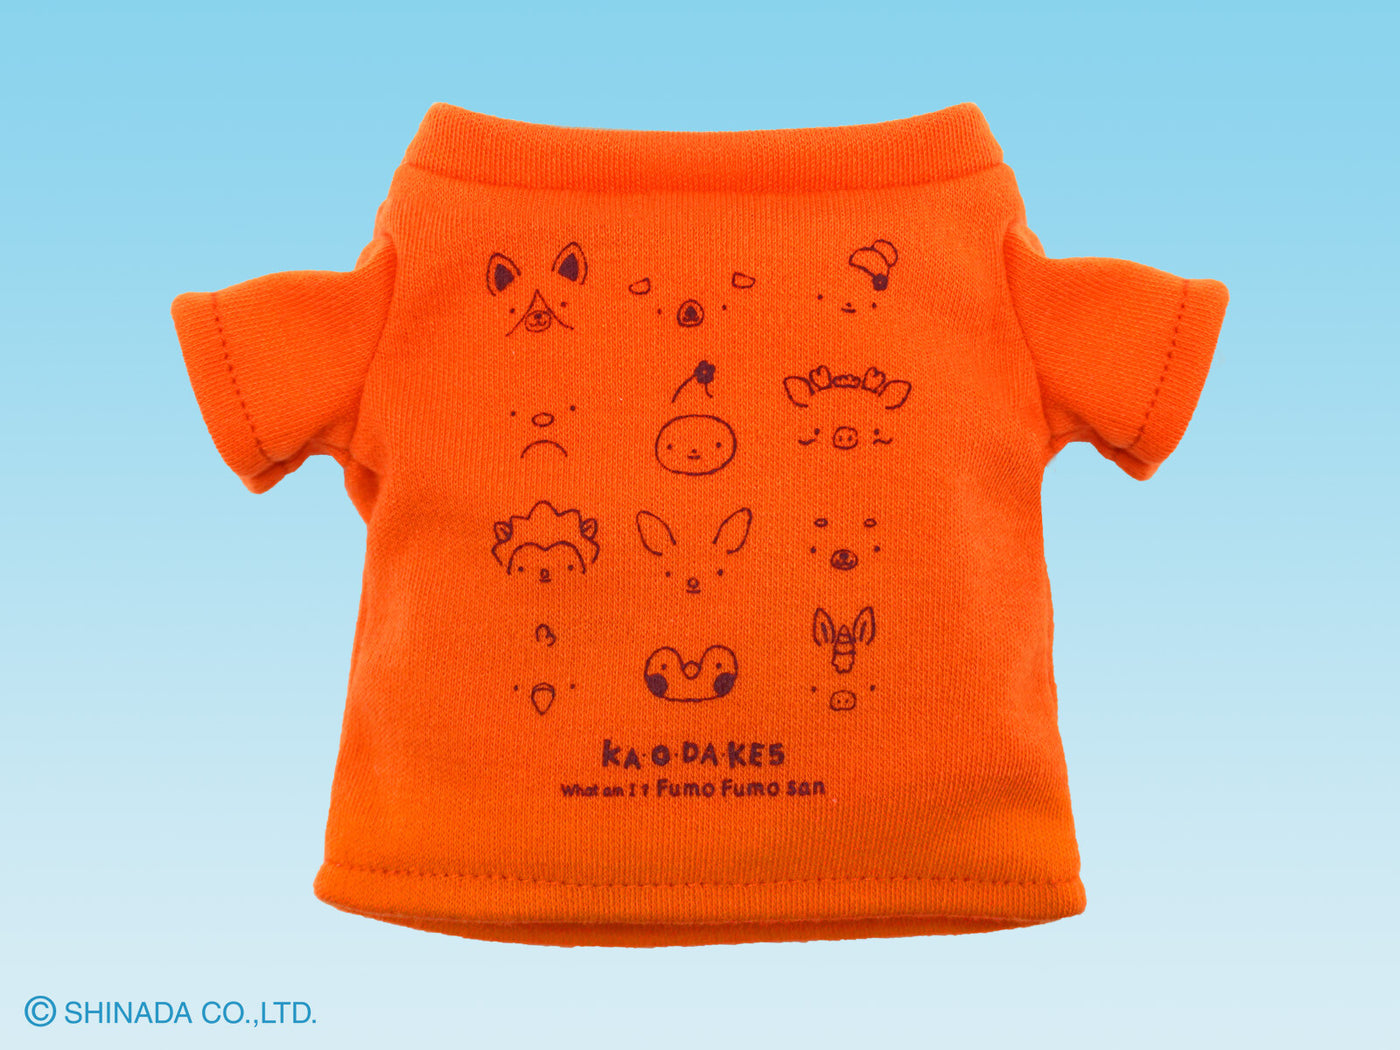 Mini T-shirt for Fumofumo San Plushies (various colours)